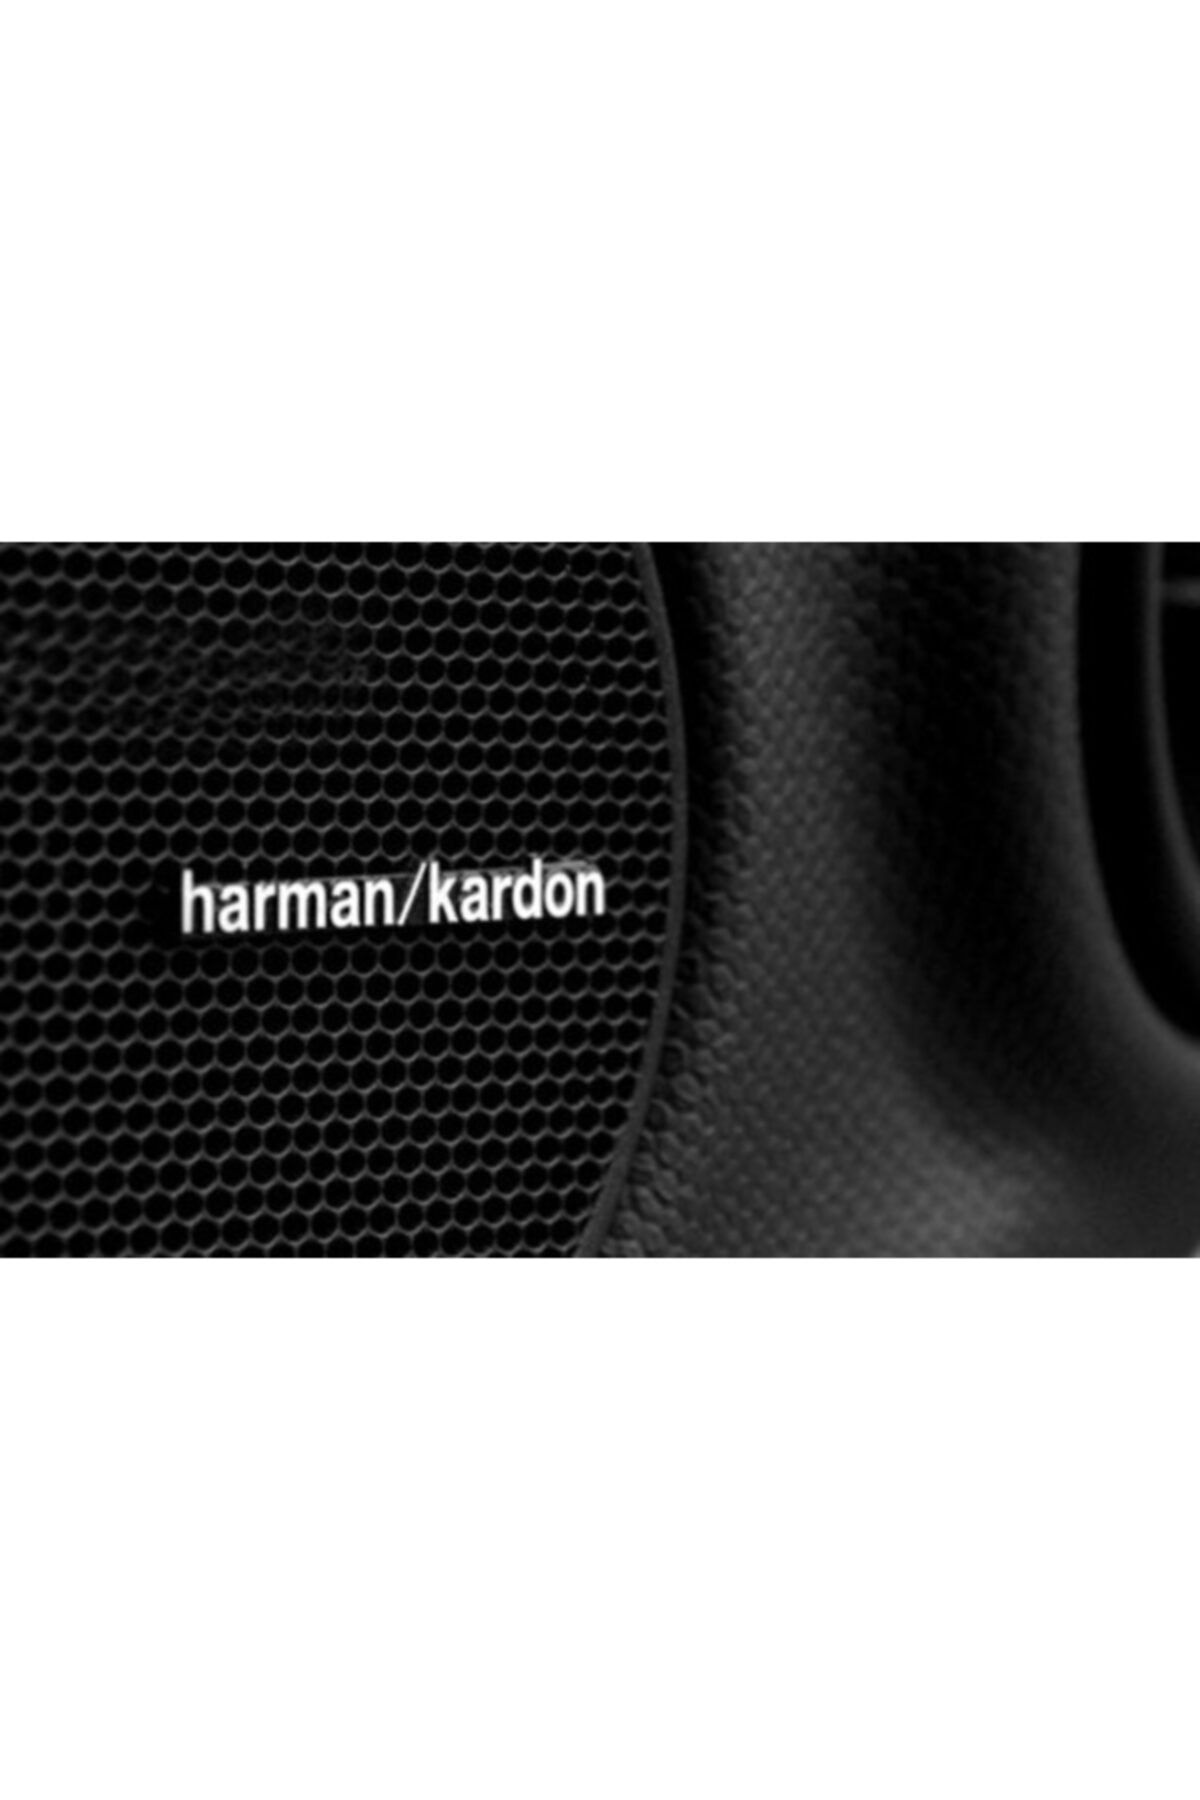 Harman Kardon Harmankardon Hoparlör Marka Logosu Yapışkanlı Etiket